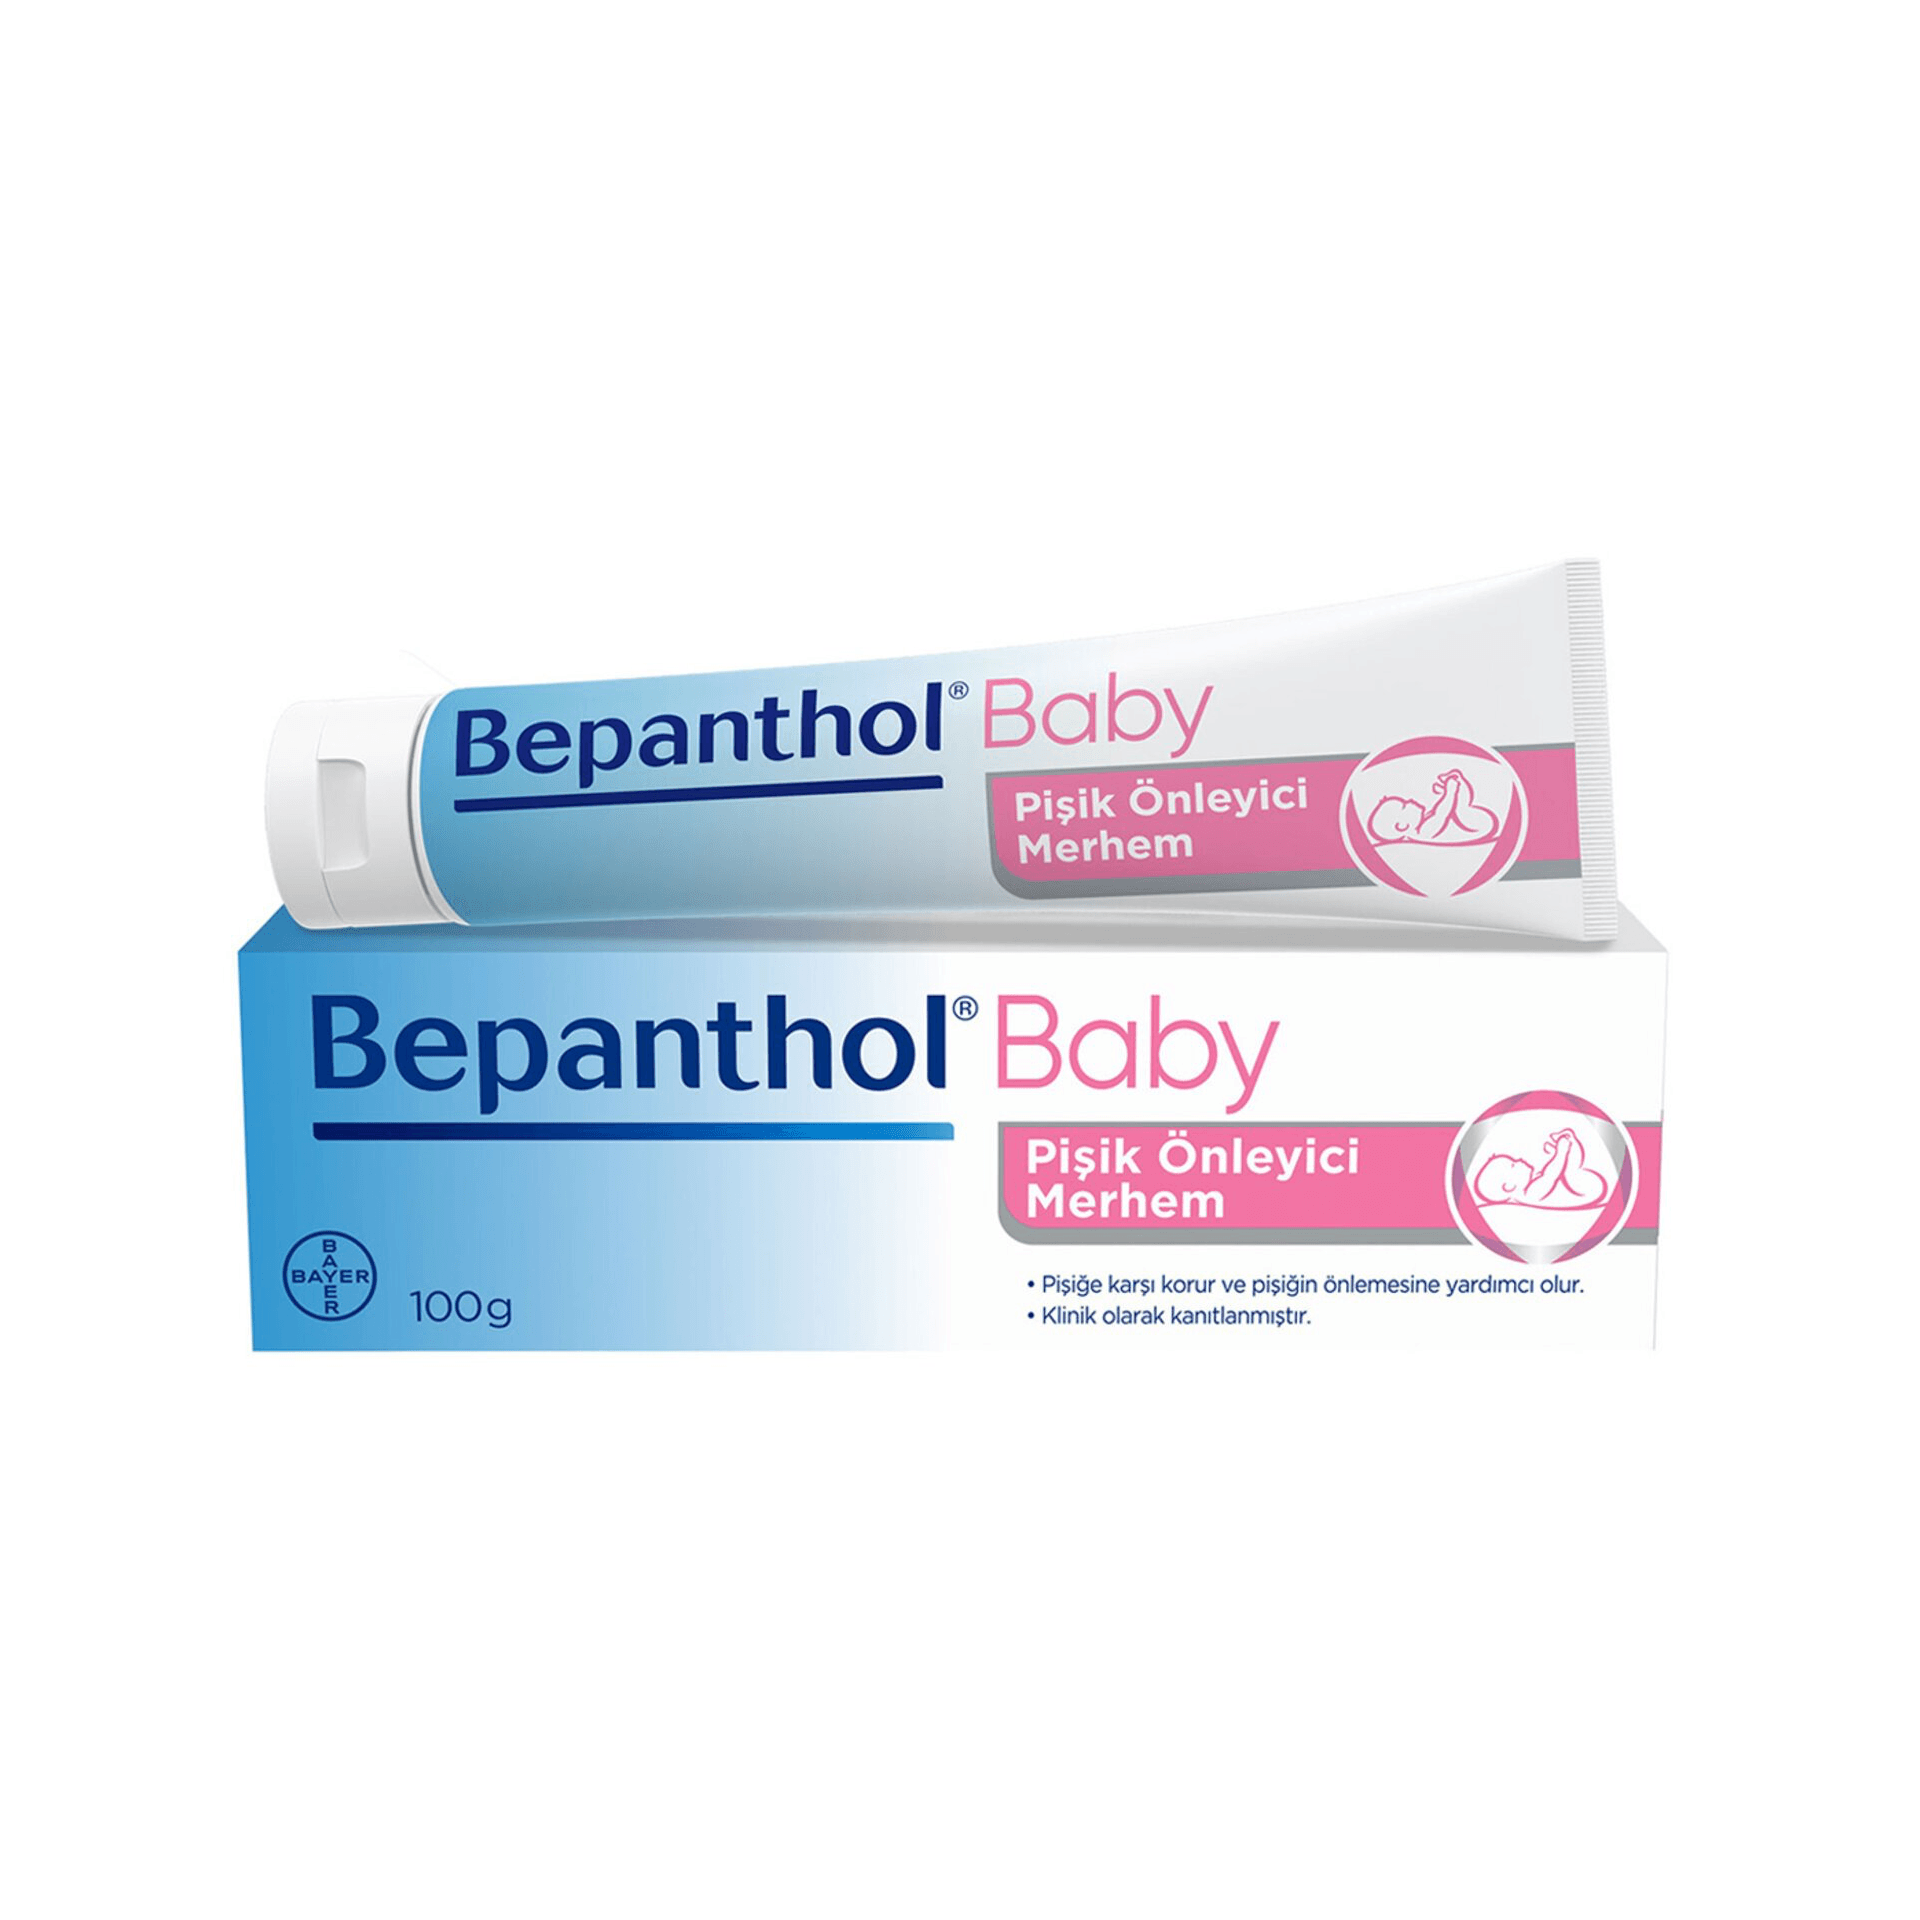 Bepanthol Baby Pişik Önleyici Merhem 100gr